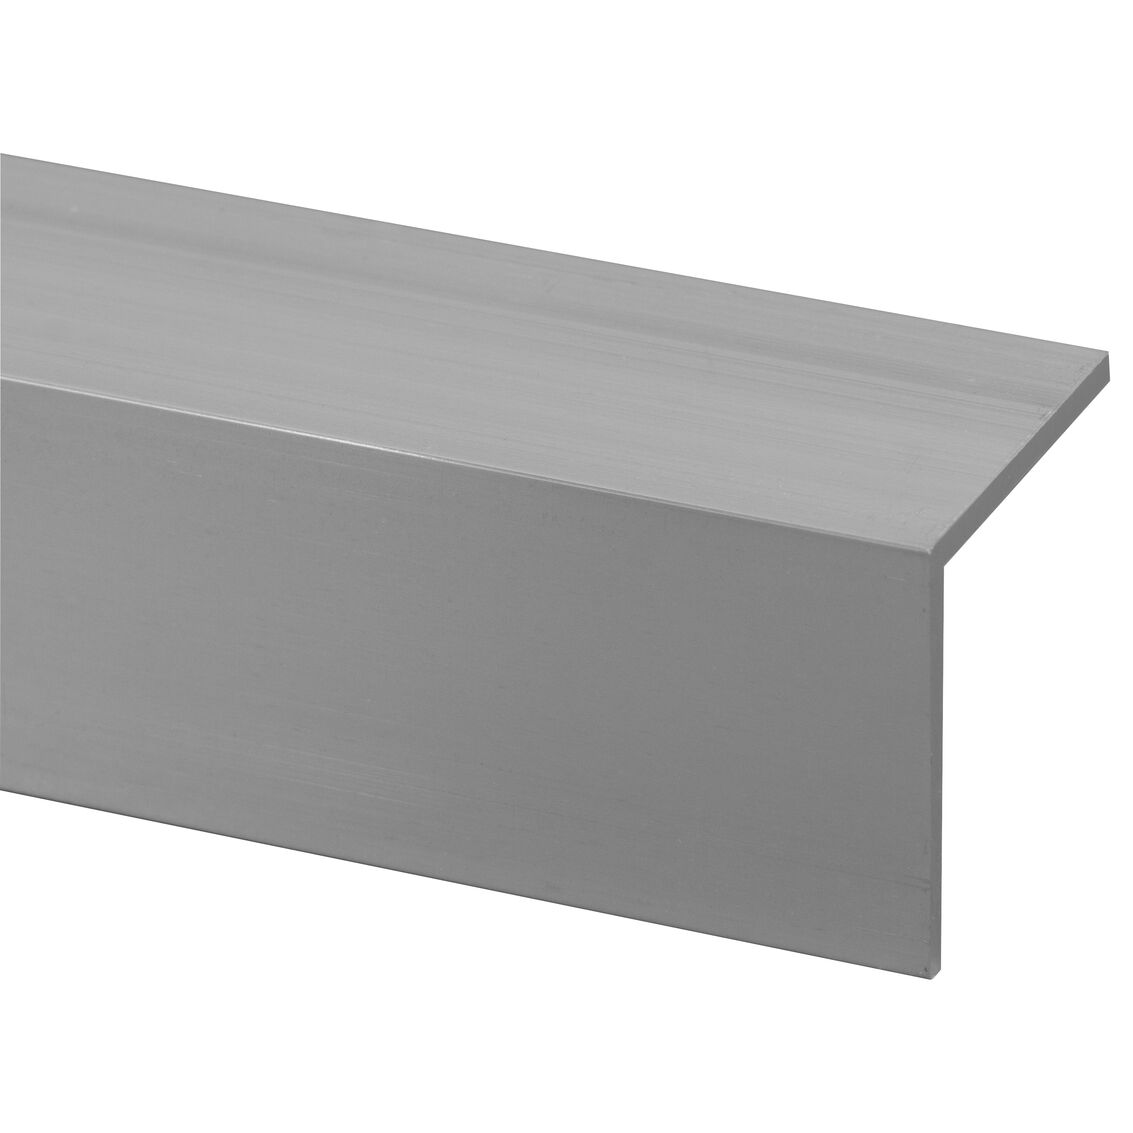 gen Maak plaats stropdas hoekprofiel aluminium 40x40mm 200cm | PontMeyer